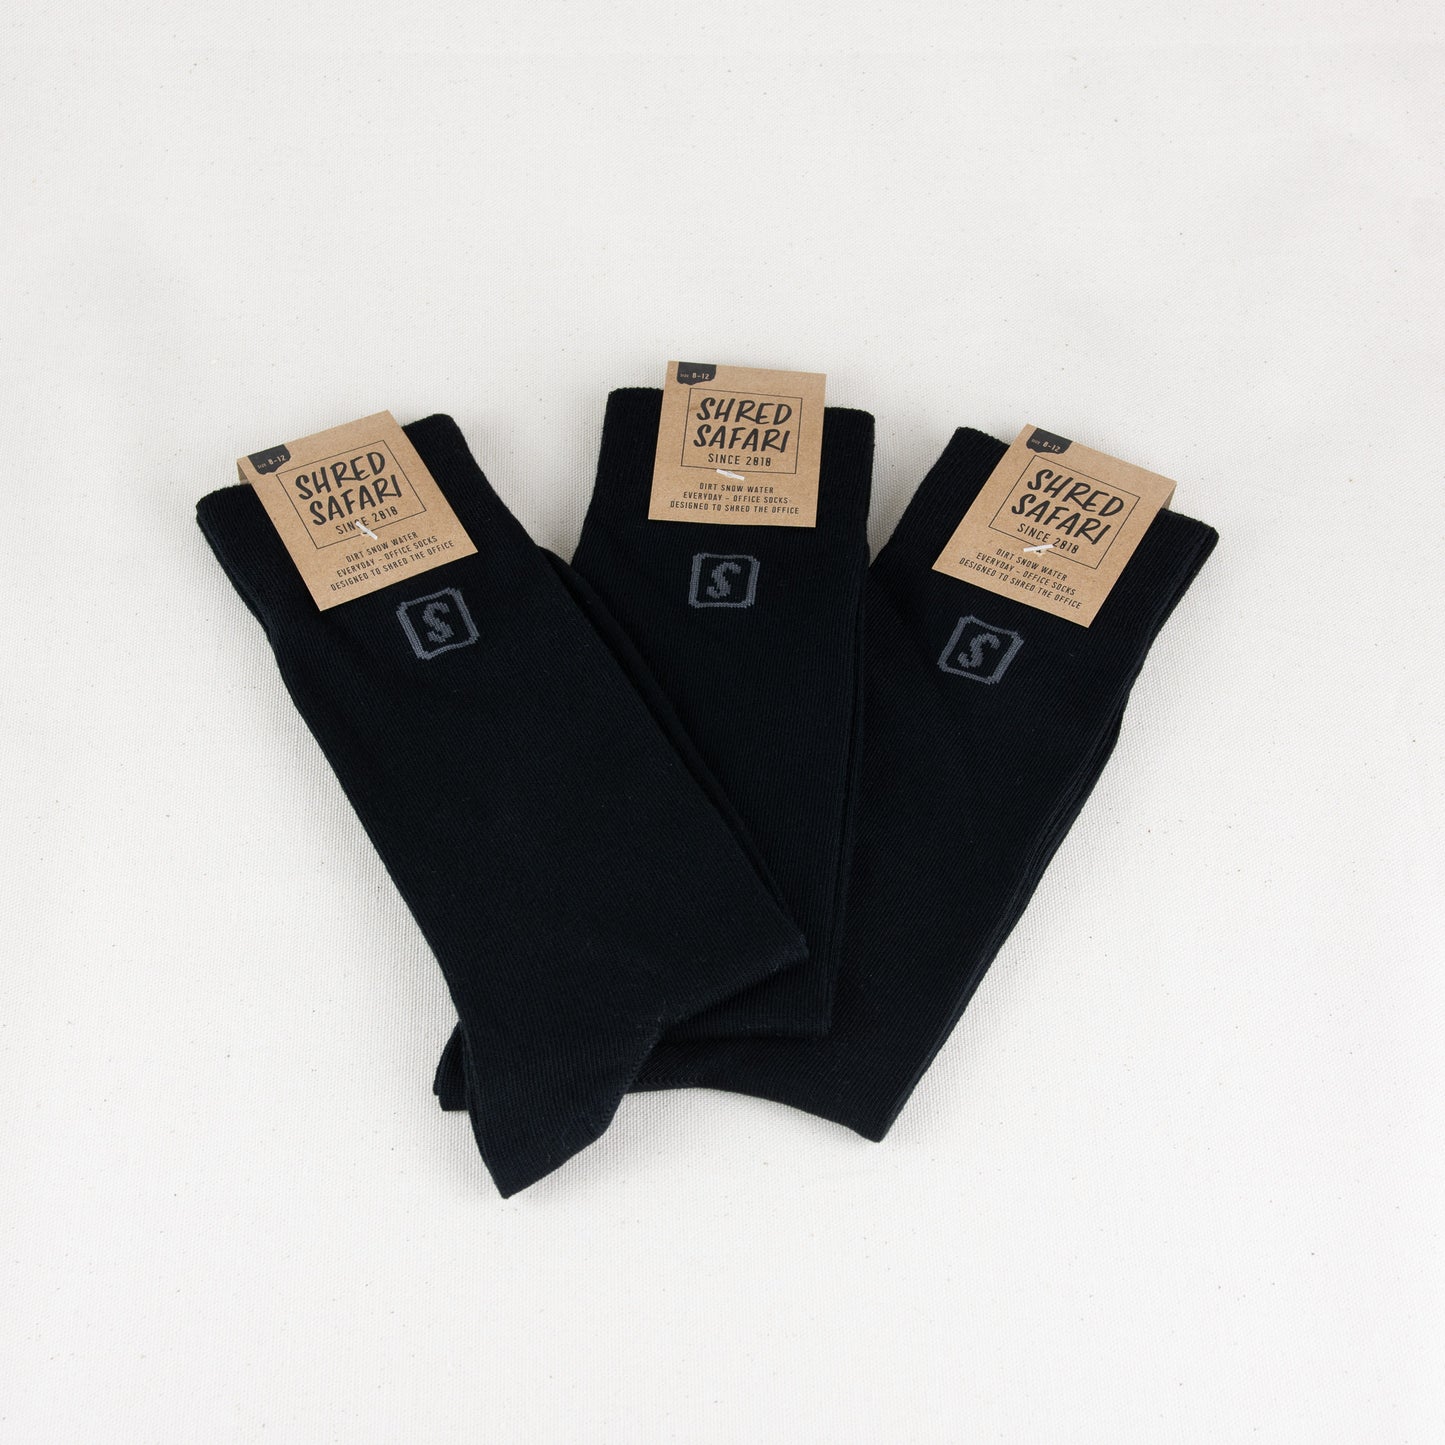 SHREDSAFARI Office Socks Black 3er